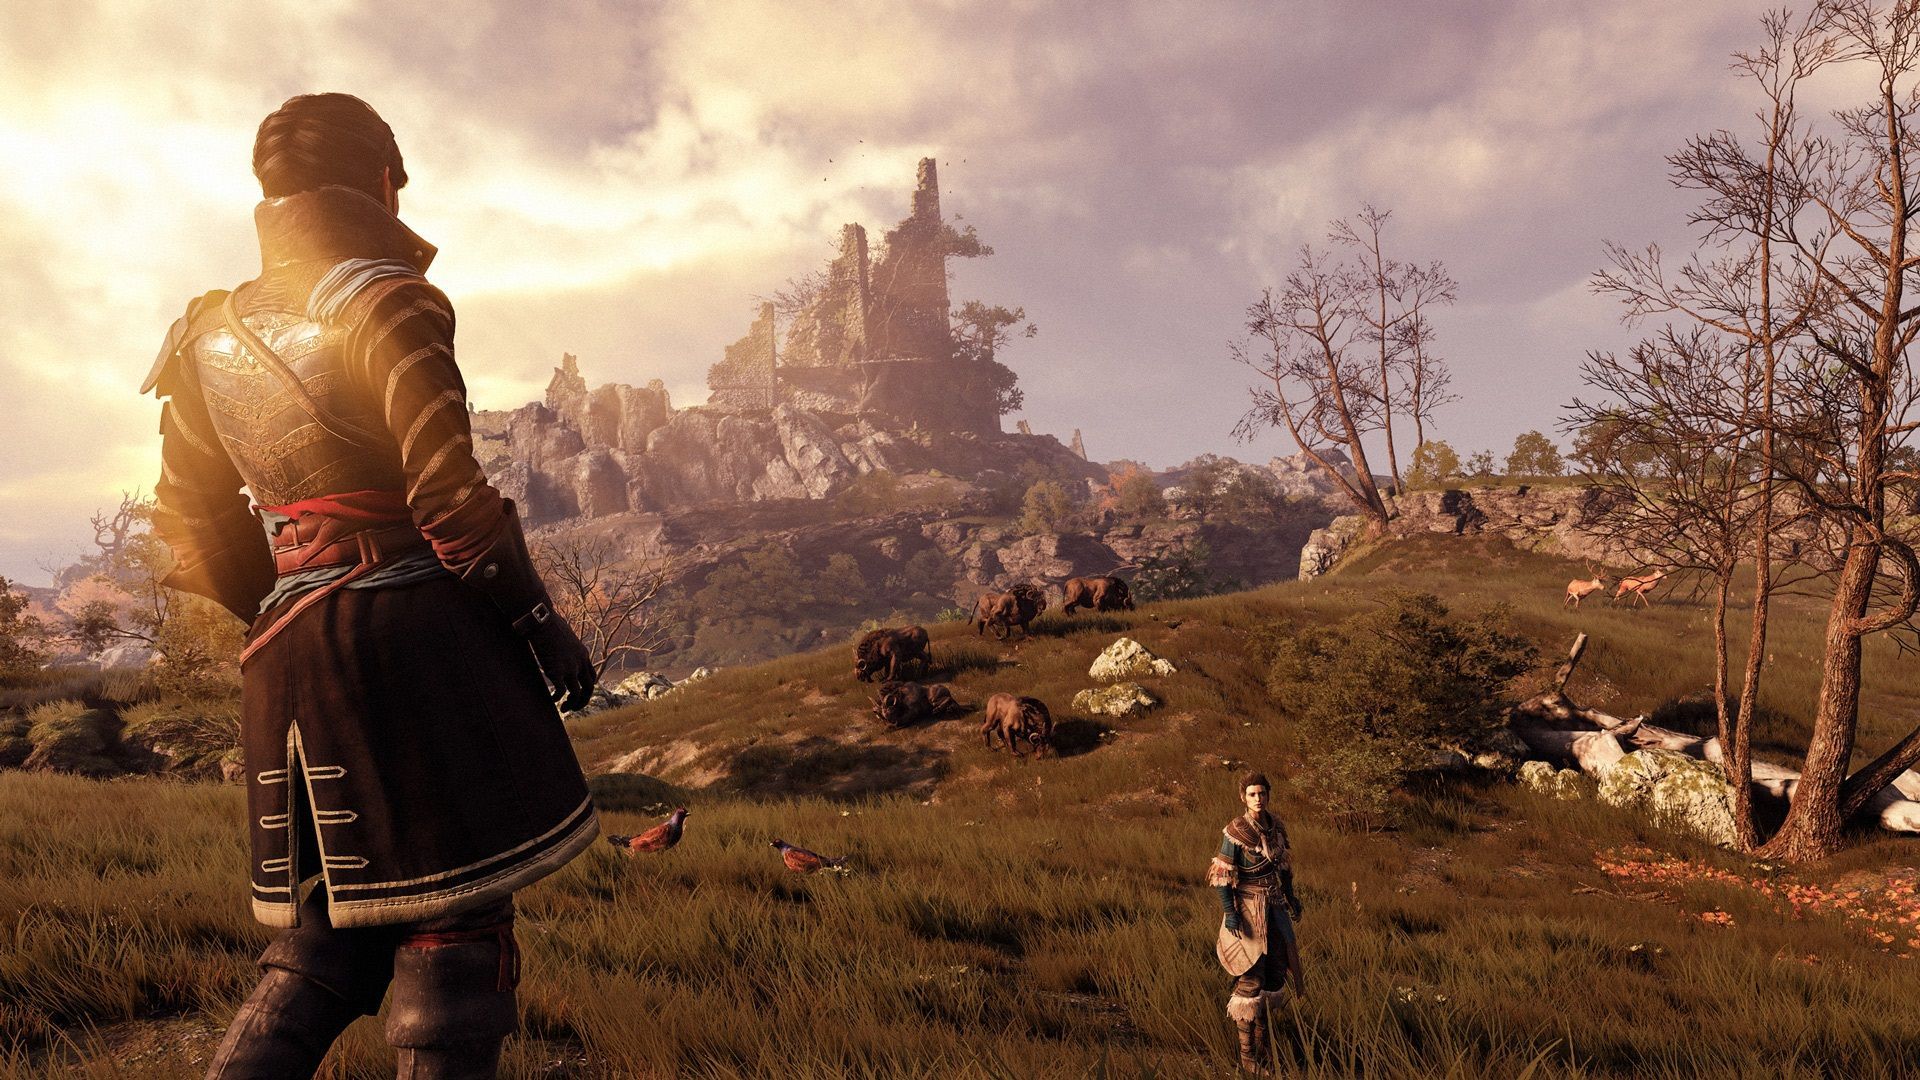 Screen z gry Greedfall przedstawiający dwójkę bohaterów na łące z ruinami w tle